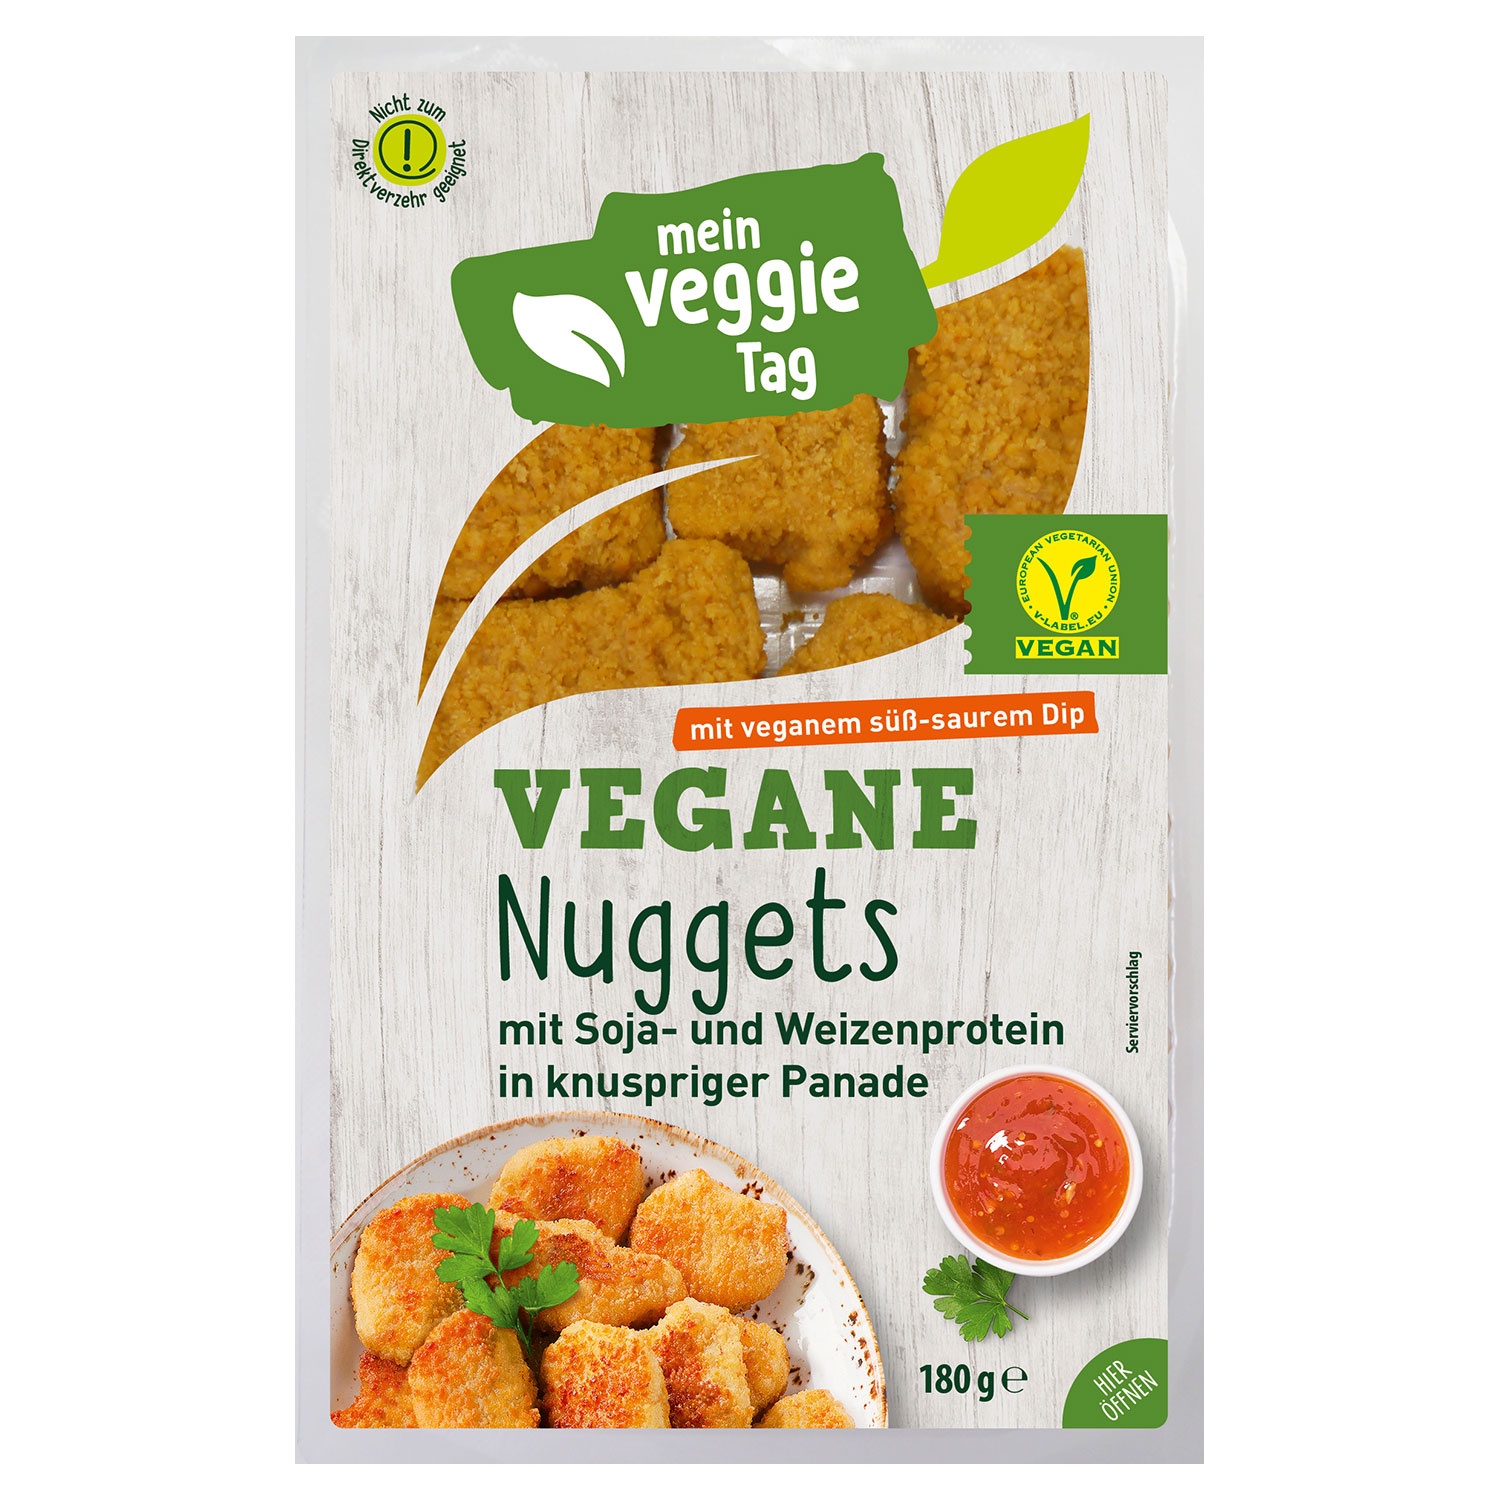 MEIN VEGGIE TAG Veggie Snack & Dip 180 g